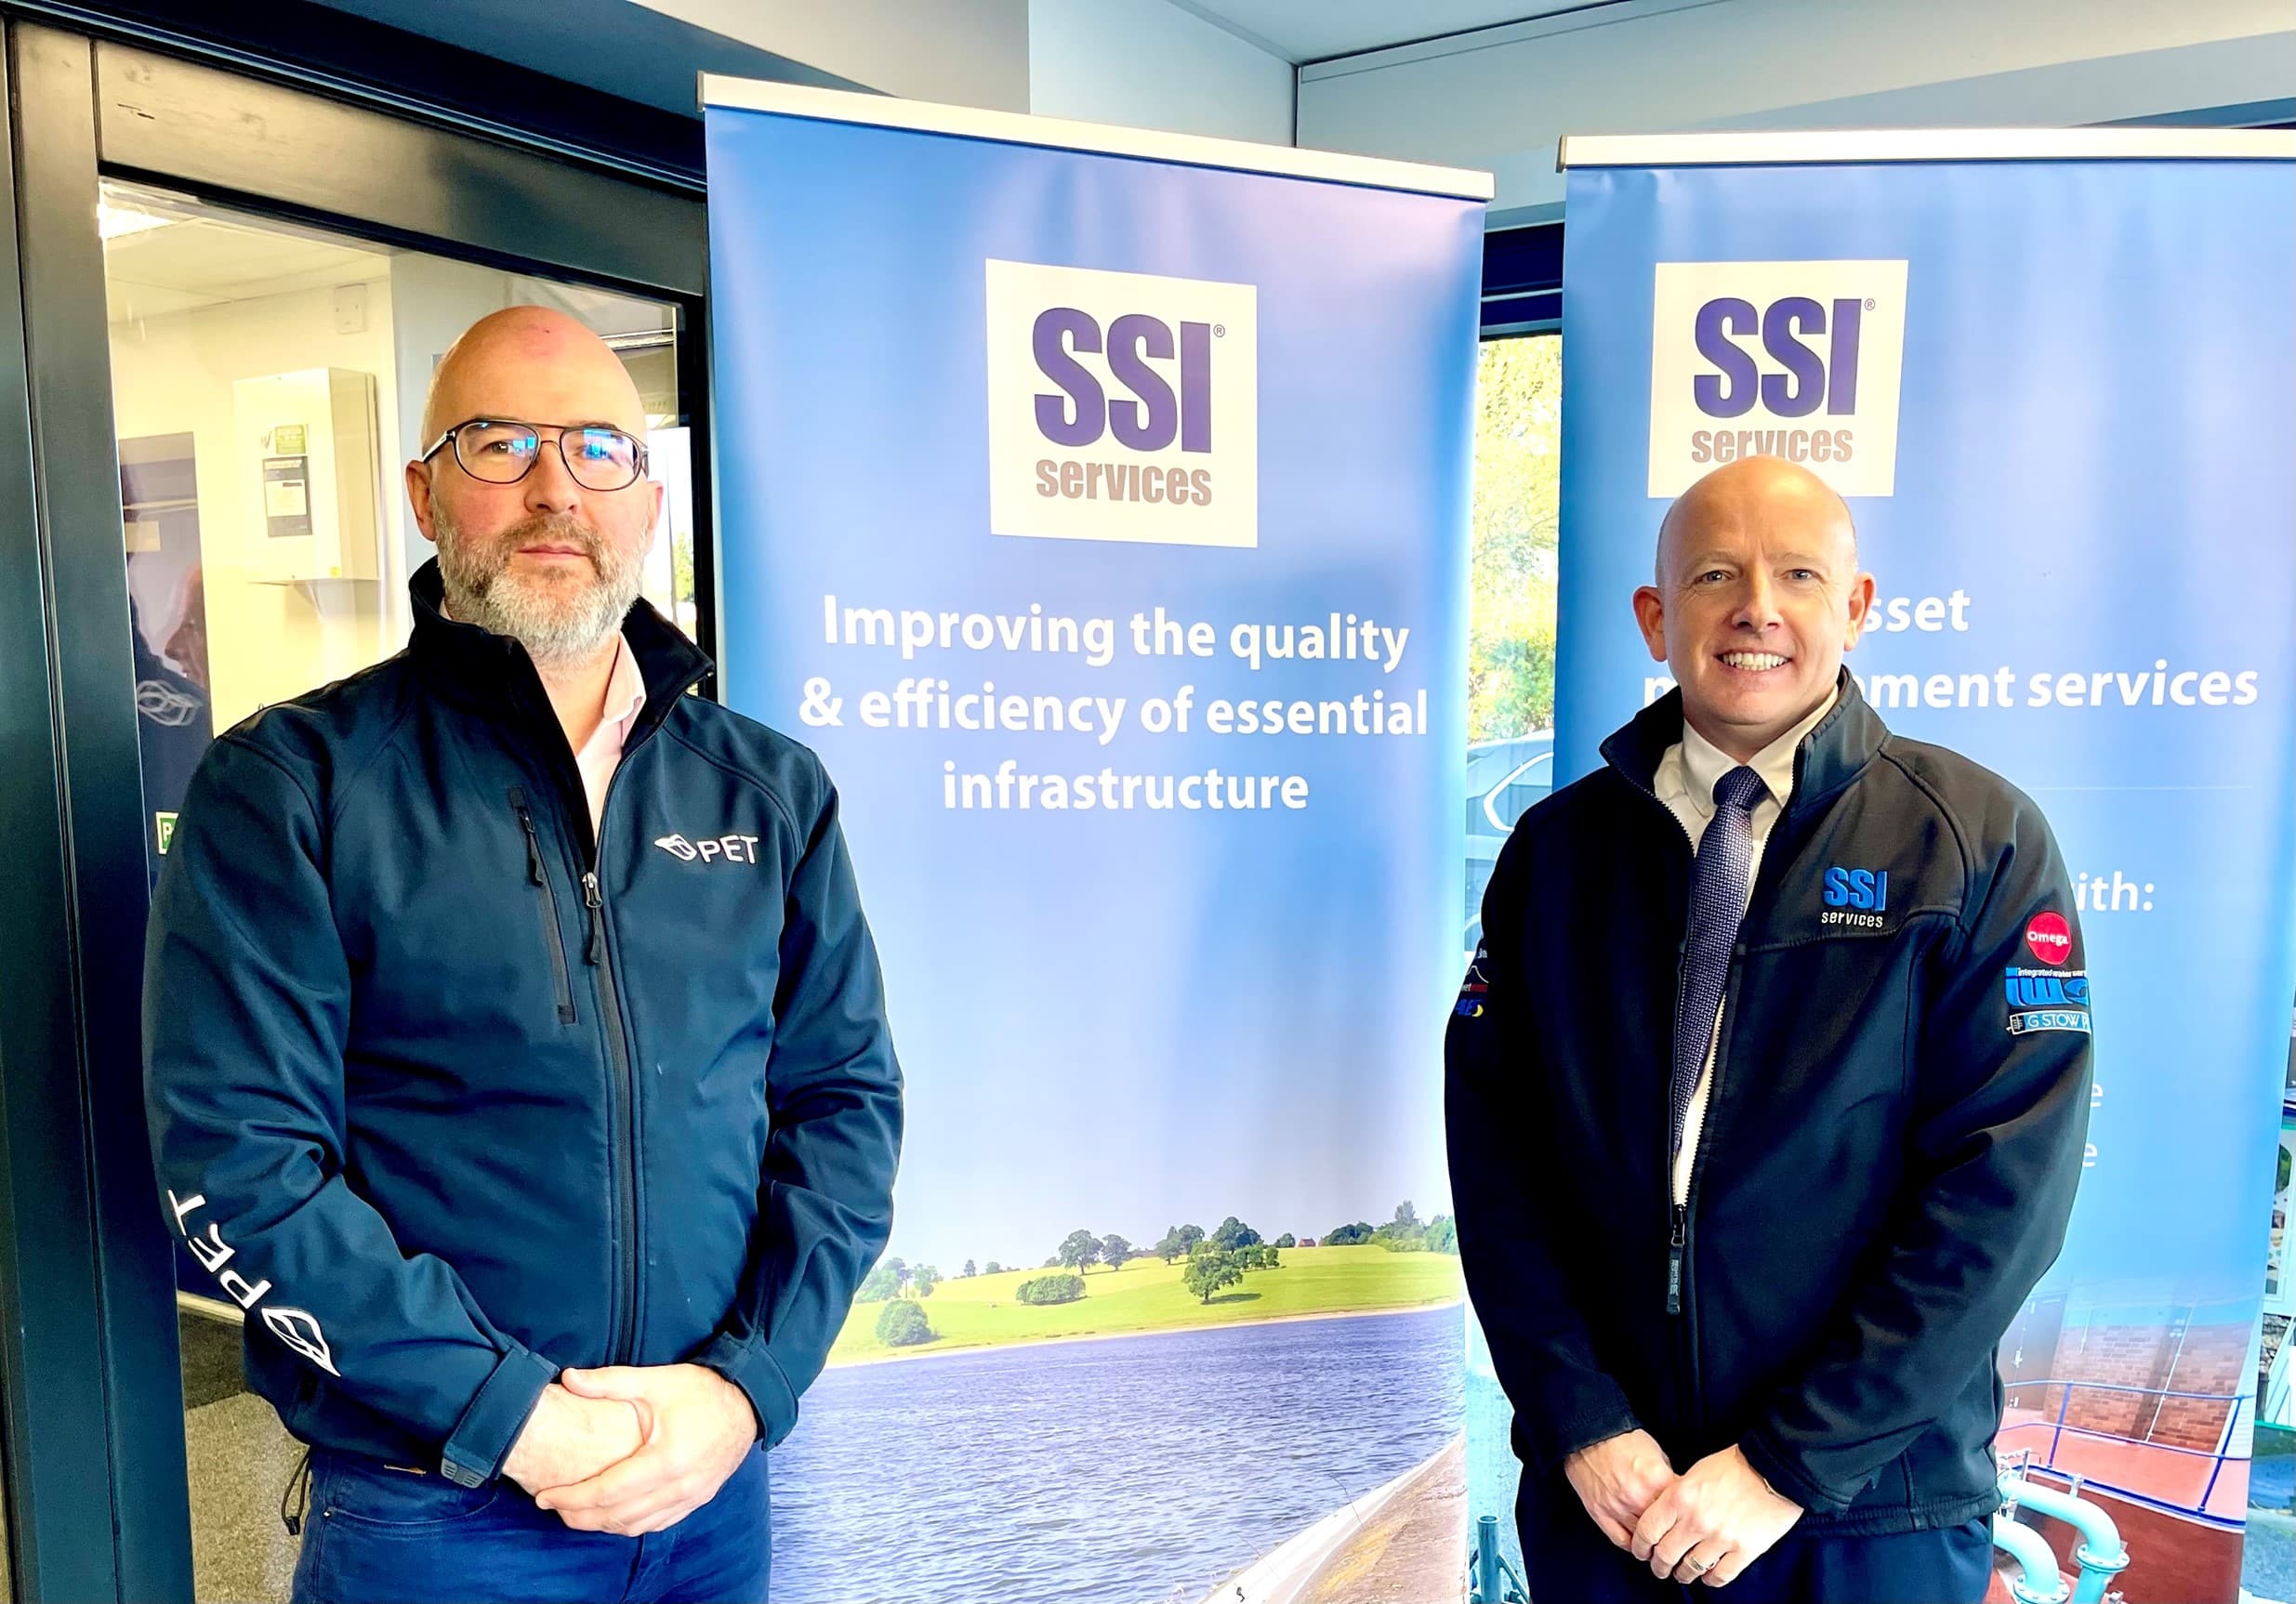 Partnership SSI e PET: Damian Whelan e Simon Dray